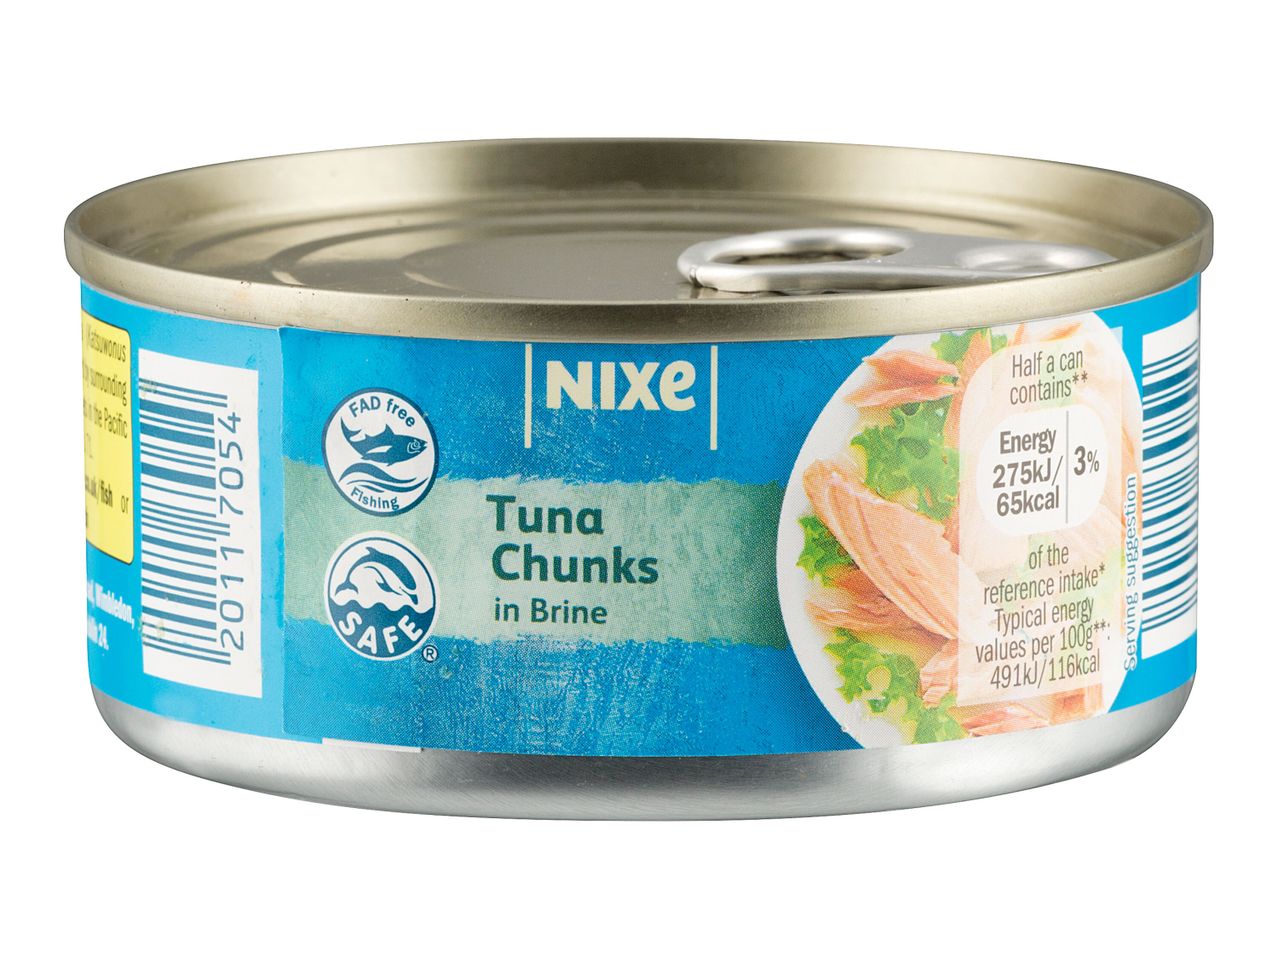 Go to full screen view: Nixe Tuna Chunks in Brine - Image 1